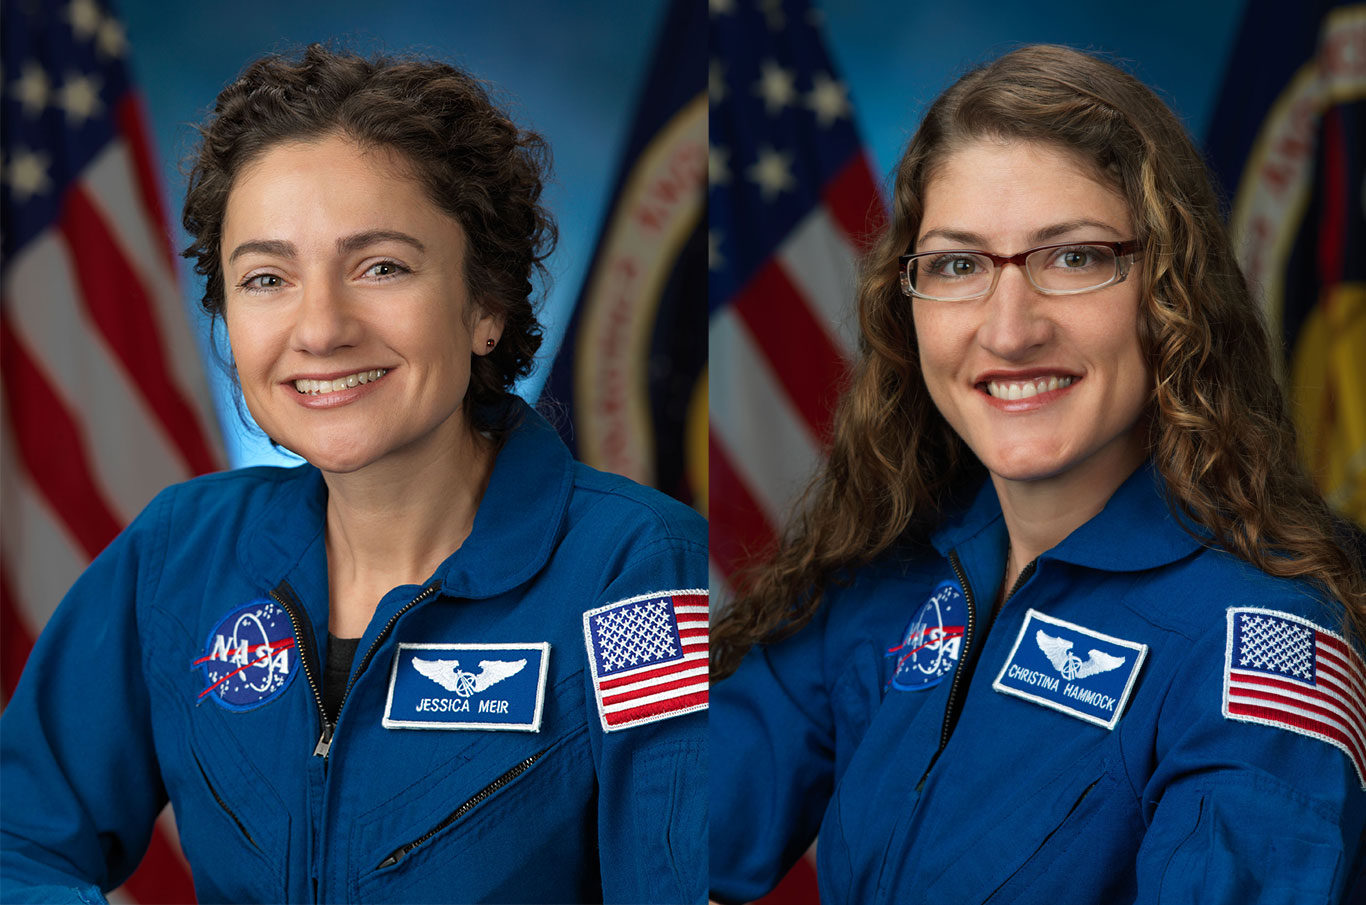 Jessica e Christina estão no programa espacial desde 2013 (Foto: NASA/Divulgação)